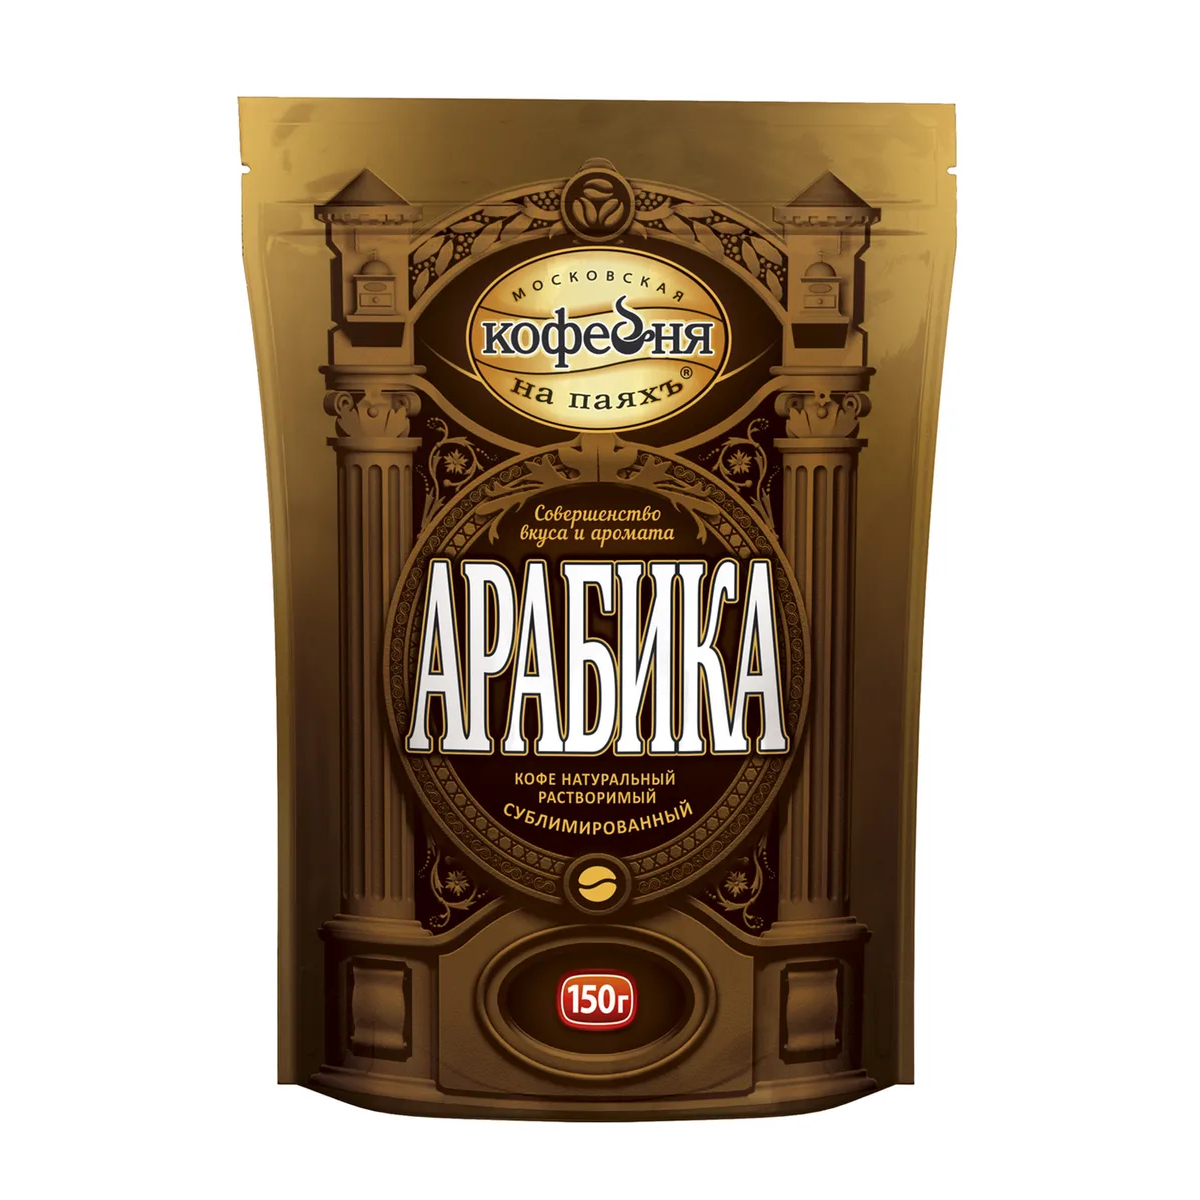 Кофе растворимый Московская Кофейня на Паяхъ Арабика, 150 г кофе brai gran 100% арабика зерно в у 1 кг